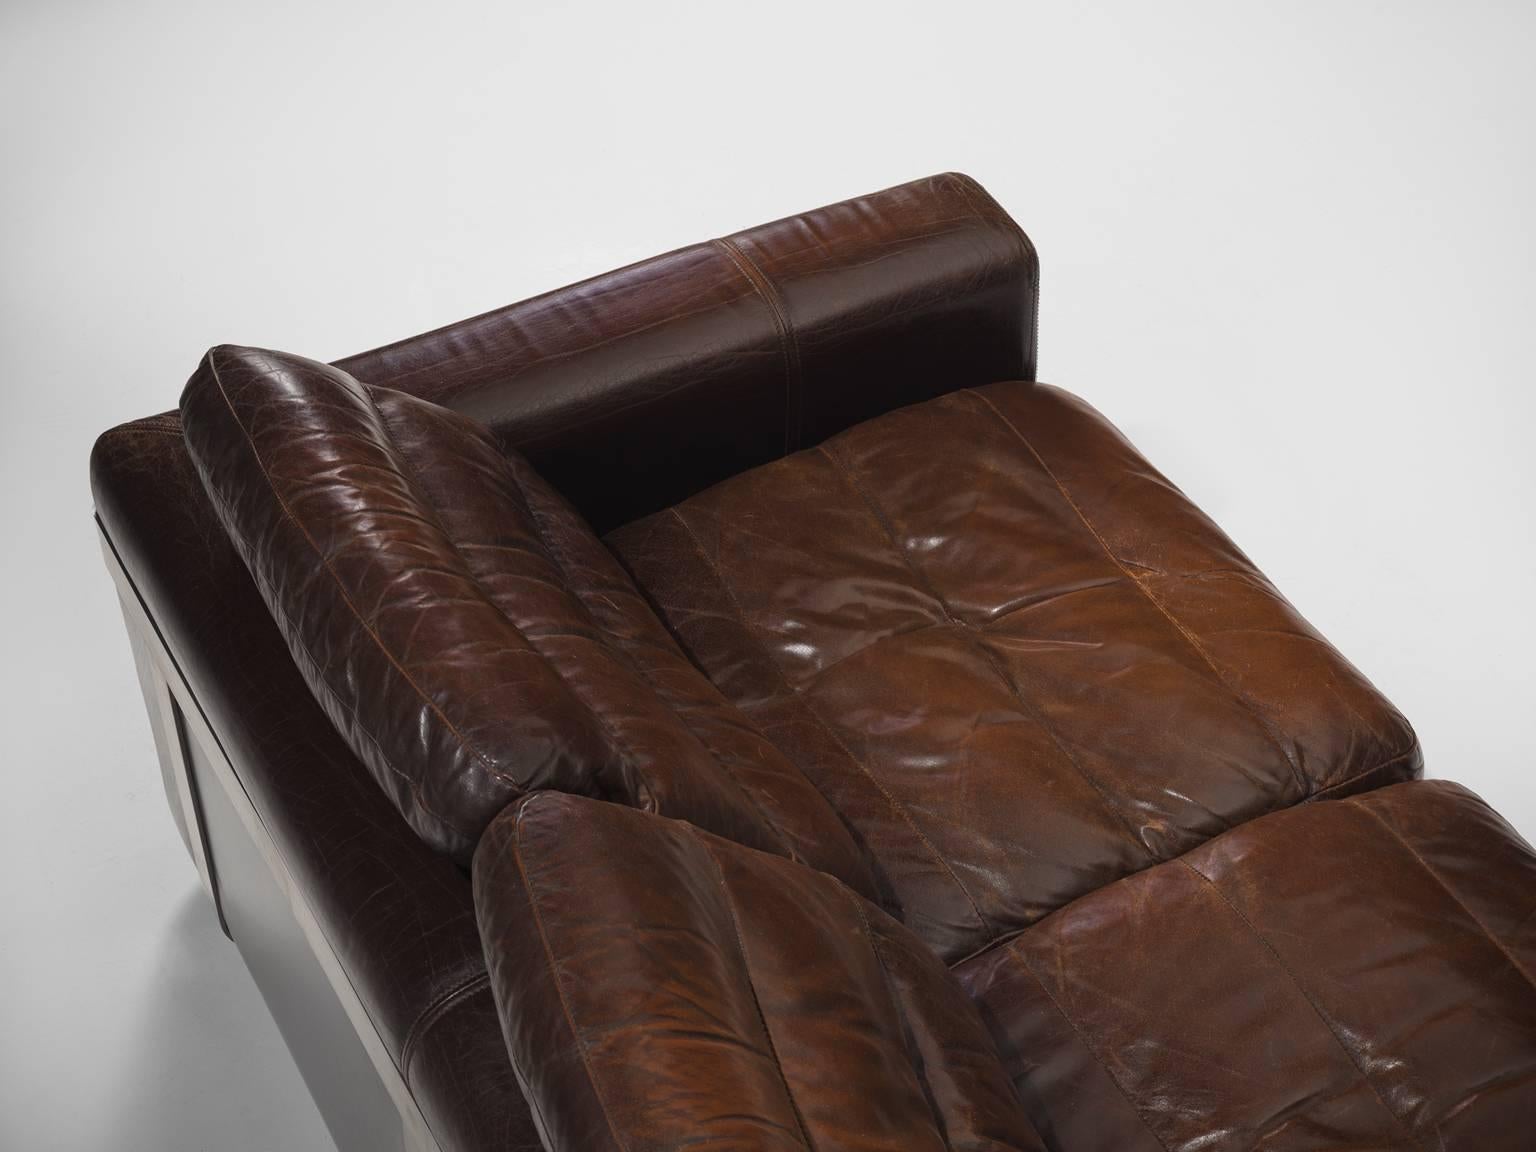 French Roche Bobois Original Leather Sofa